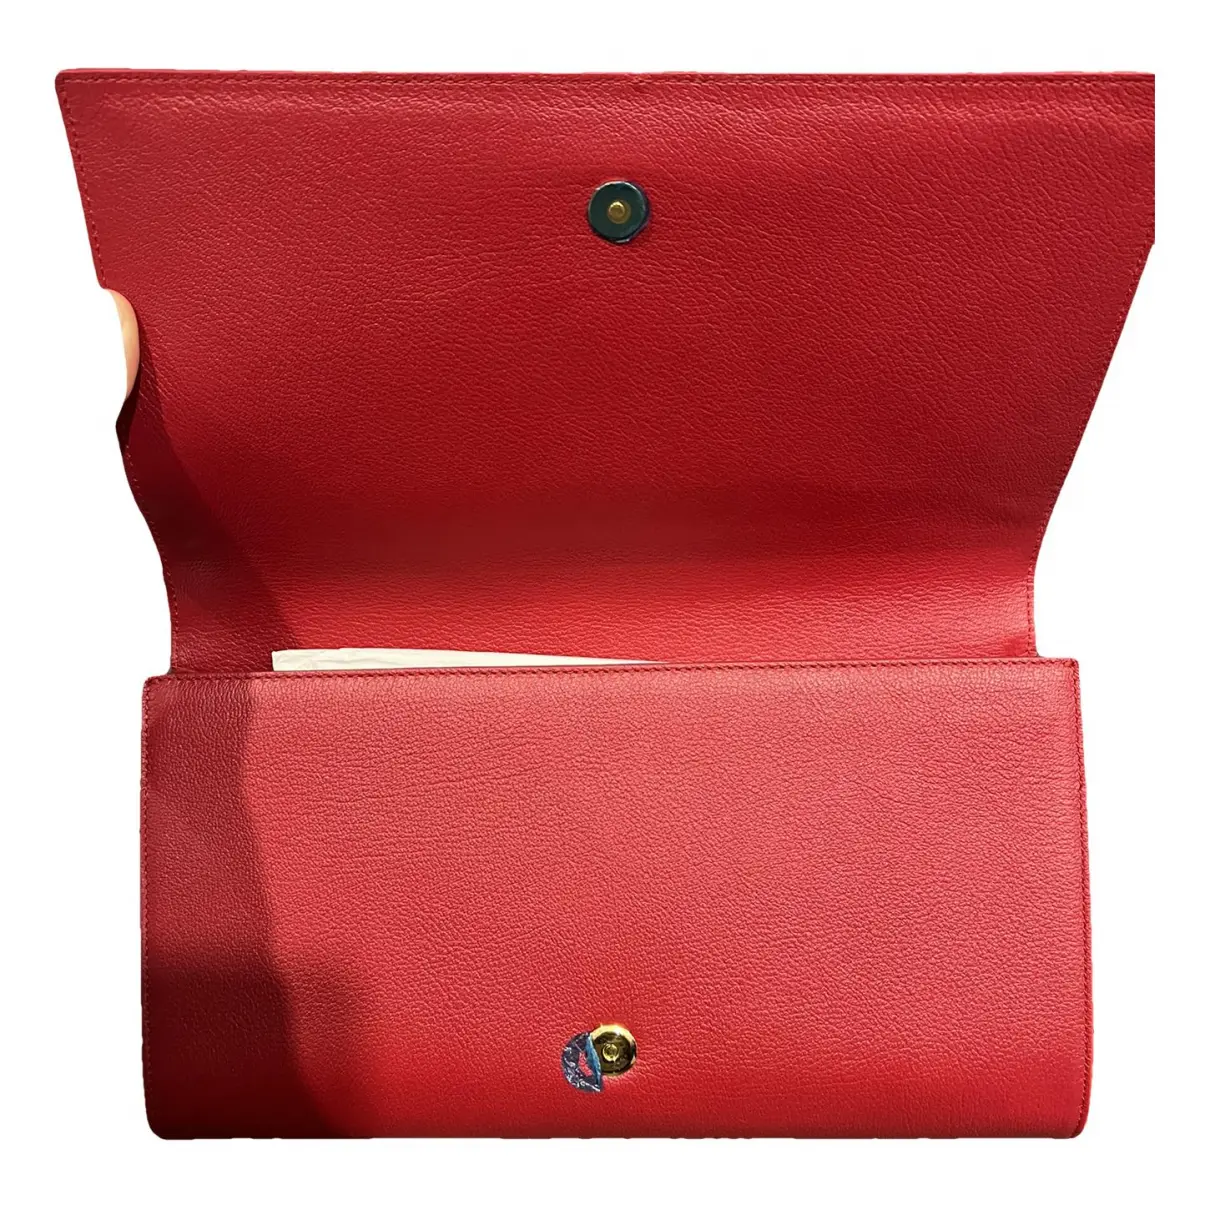 Buy Yves Saint Laurent Belle de Jour leather clutch bag online - Vintage